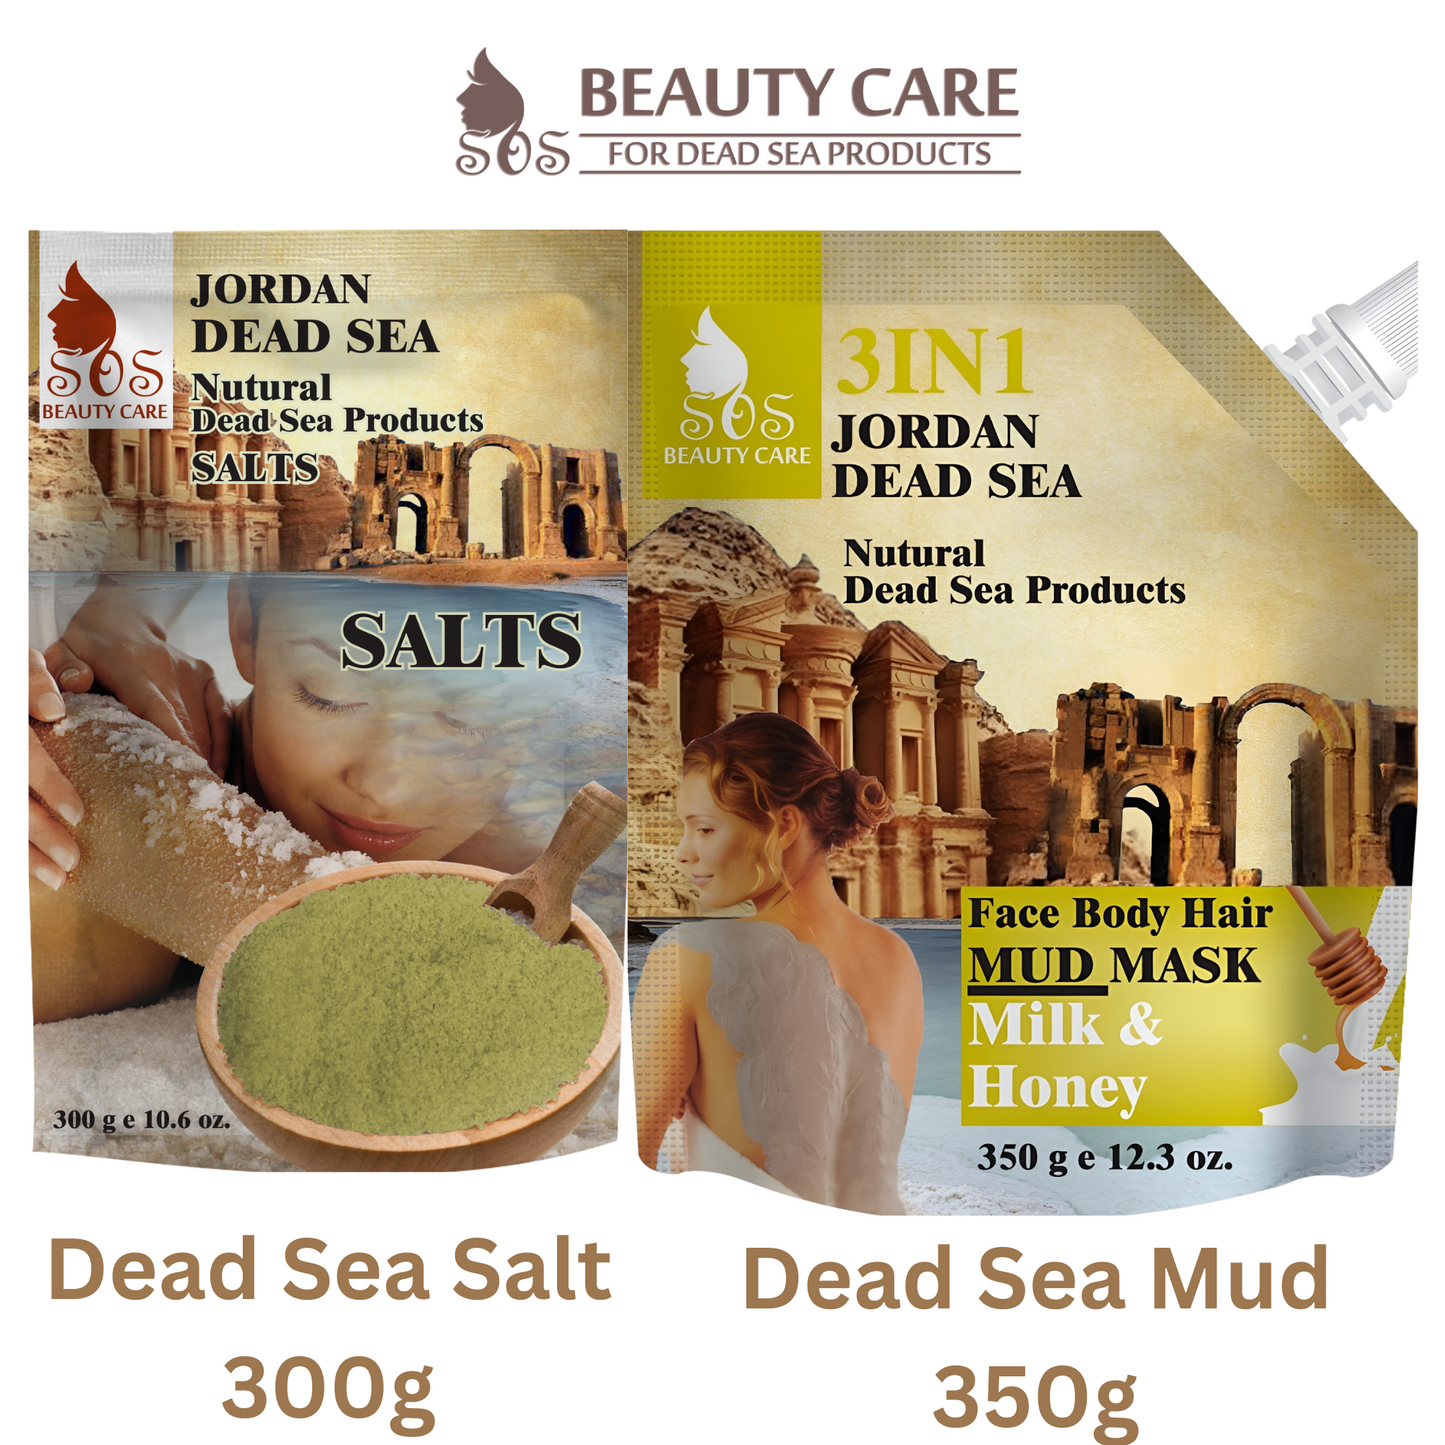 Dead Sea Mud Mask & Salt Offer | 350g Mud & 300g Salt